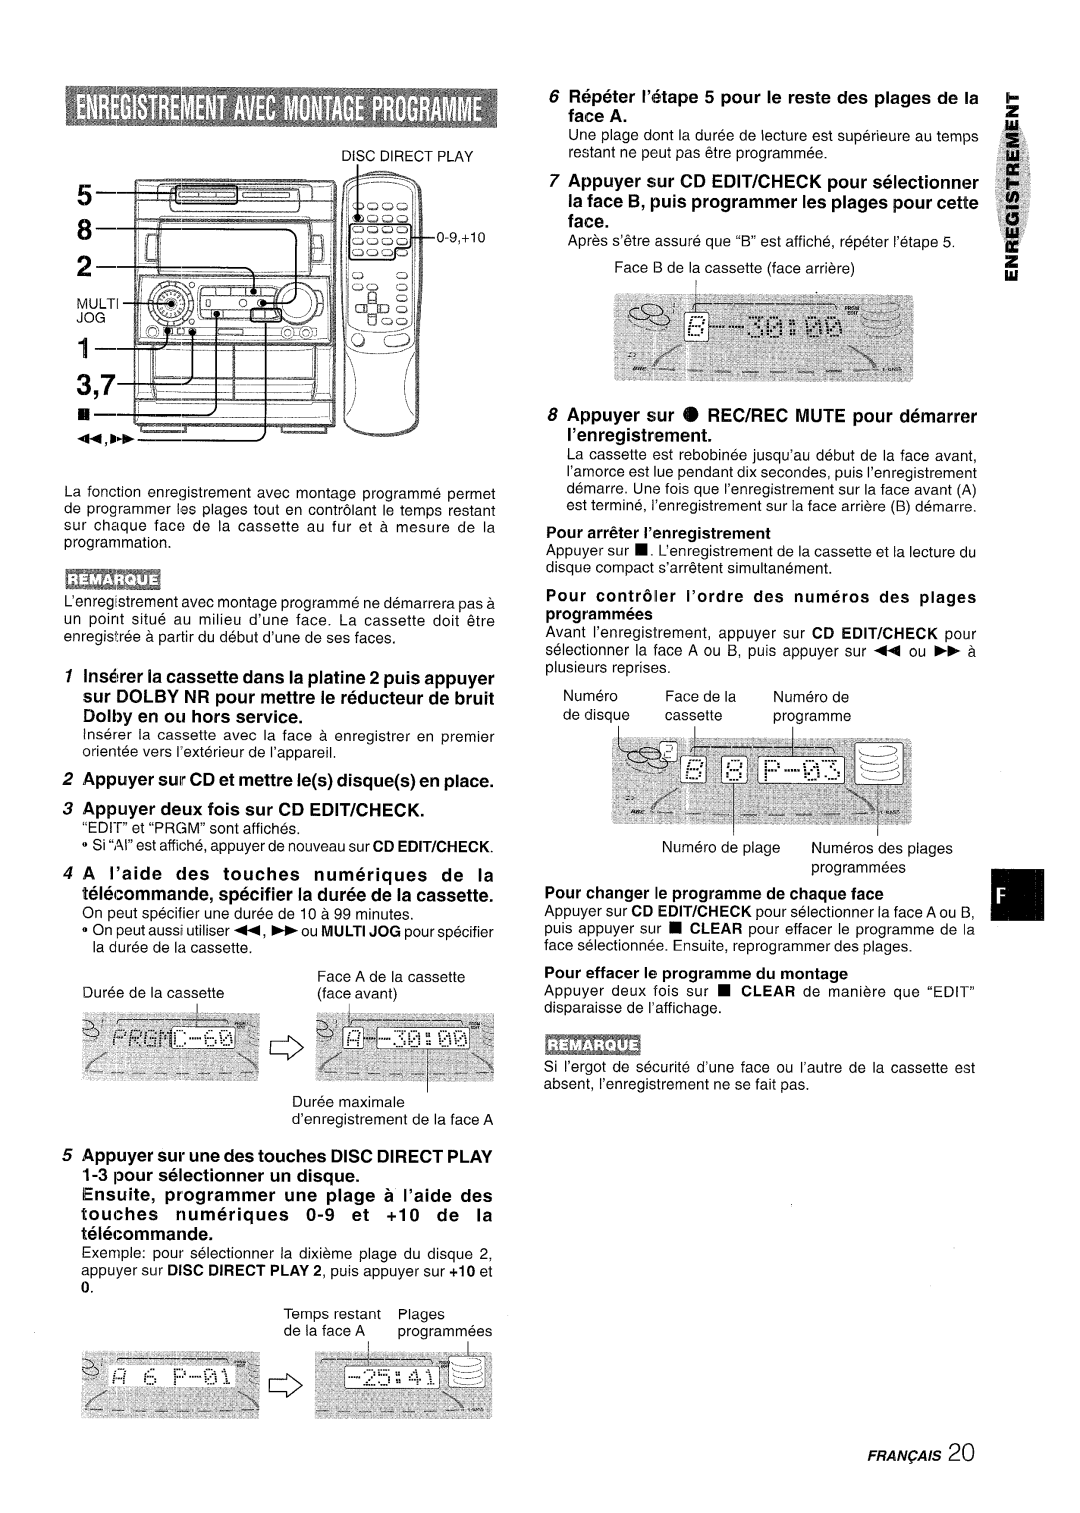 Aiwa NSX-A909 manual Appuyer suirCD et mettre Ies disques en place, Appuyer deux fois sur CD EDIT/CHECK 